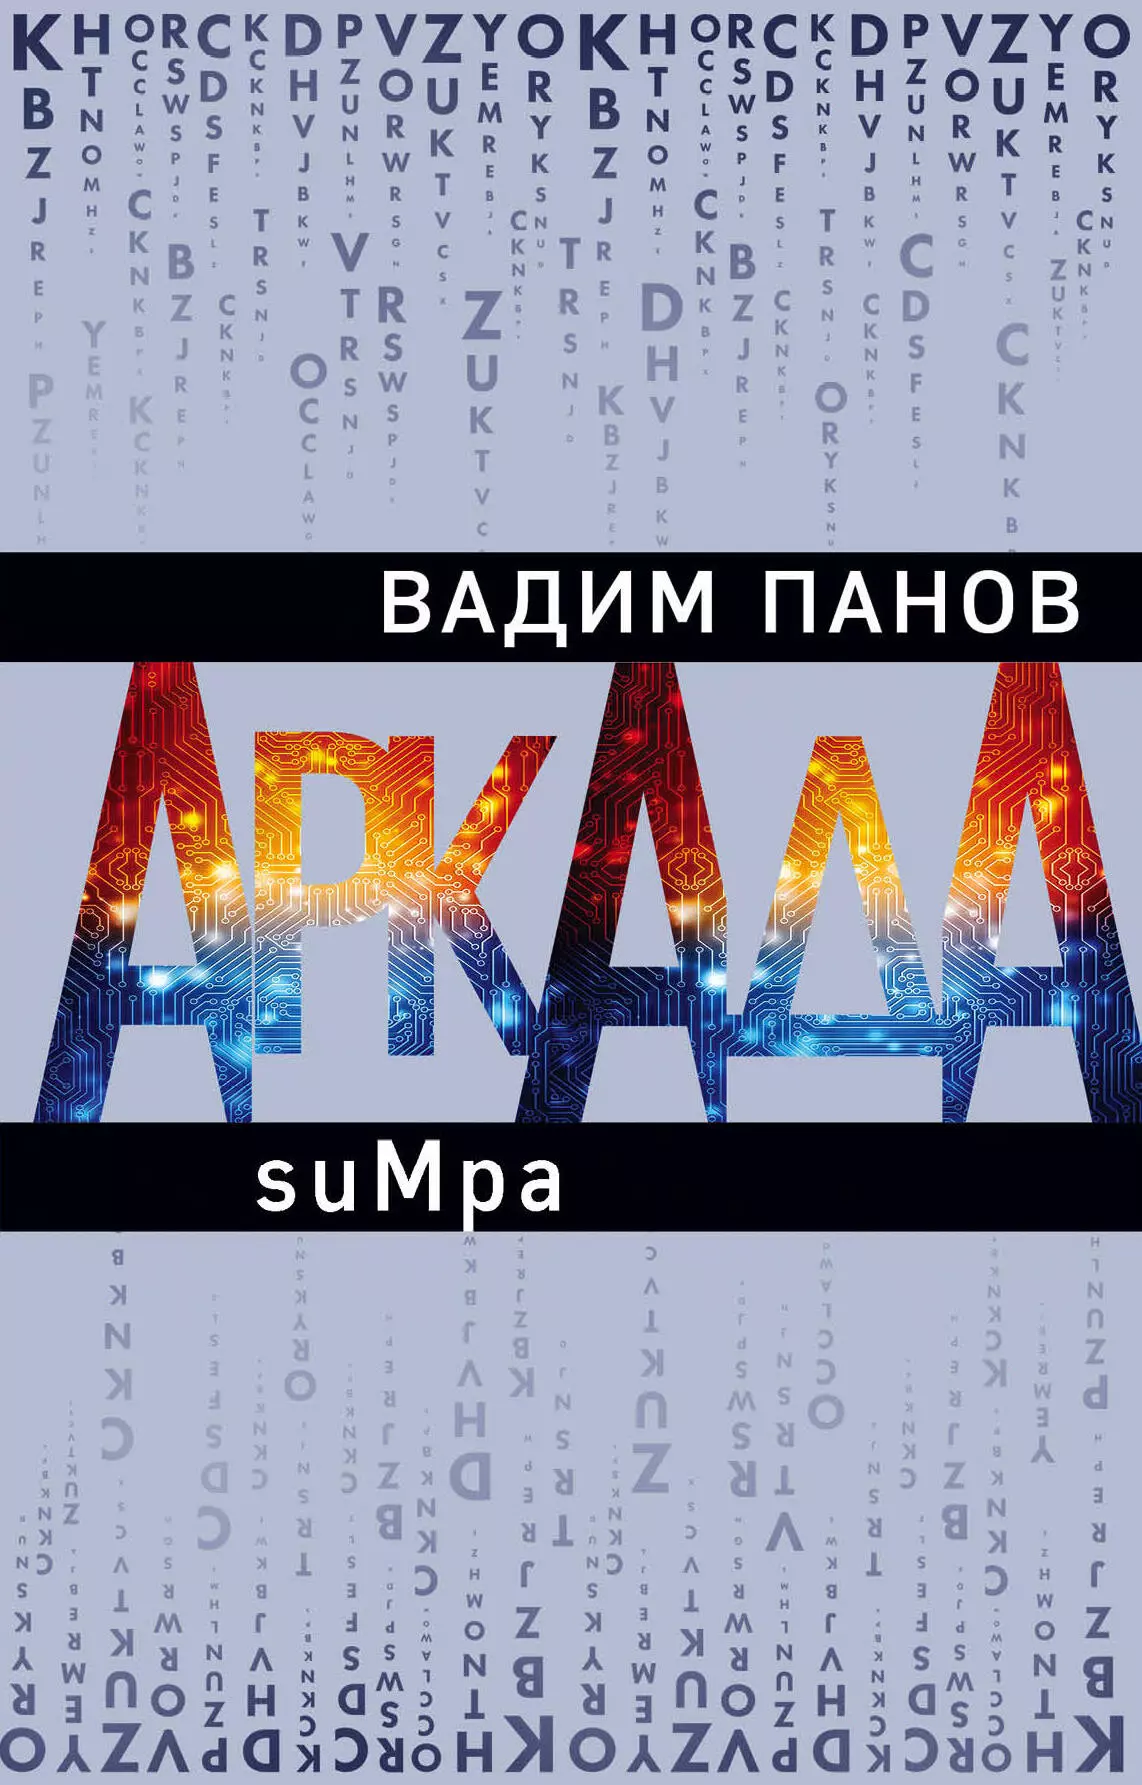 Панов Вадим Юрьевич - Аркада. Эпизод второй. suMpa